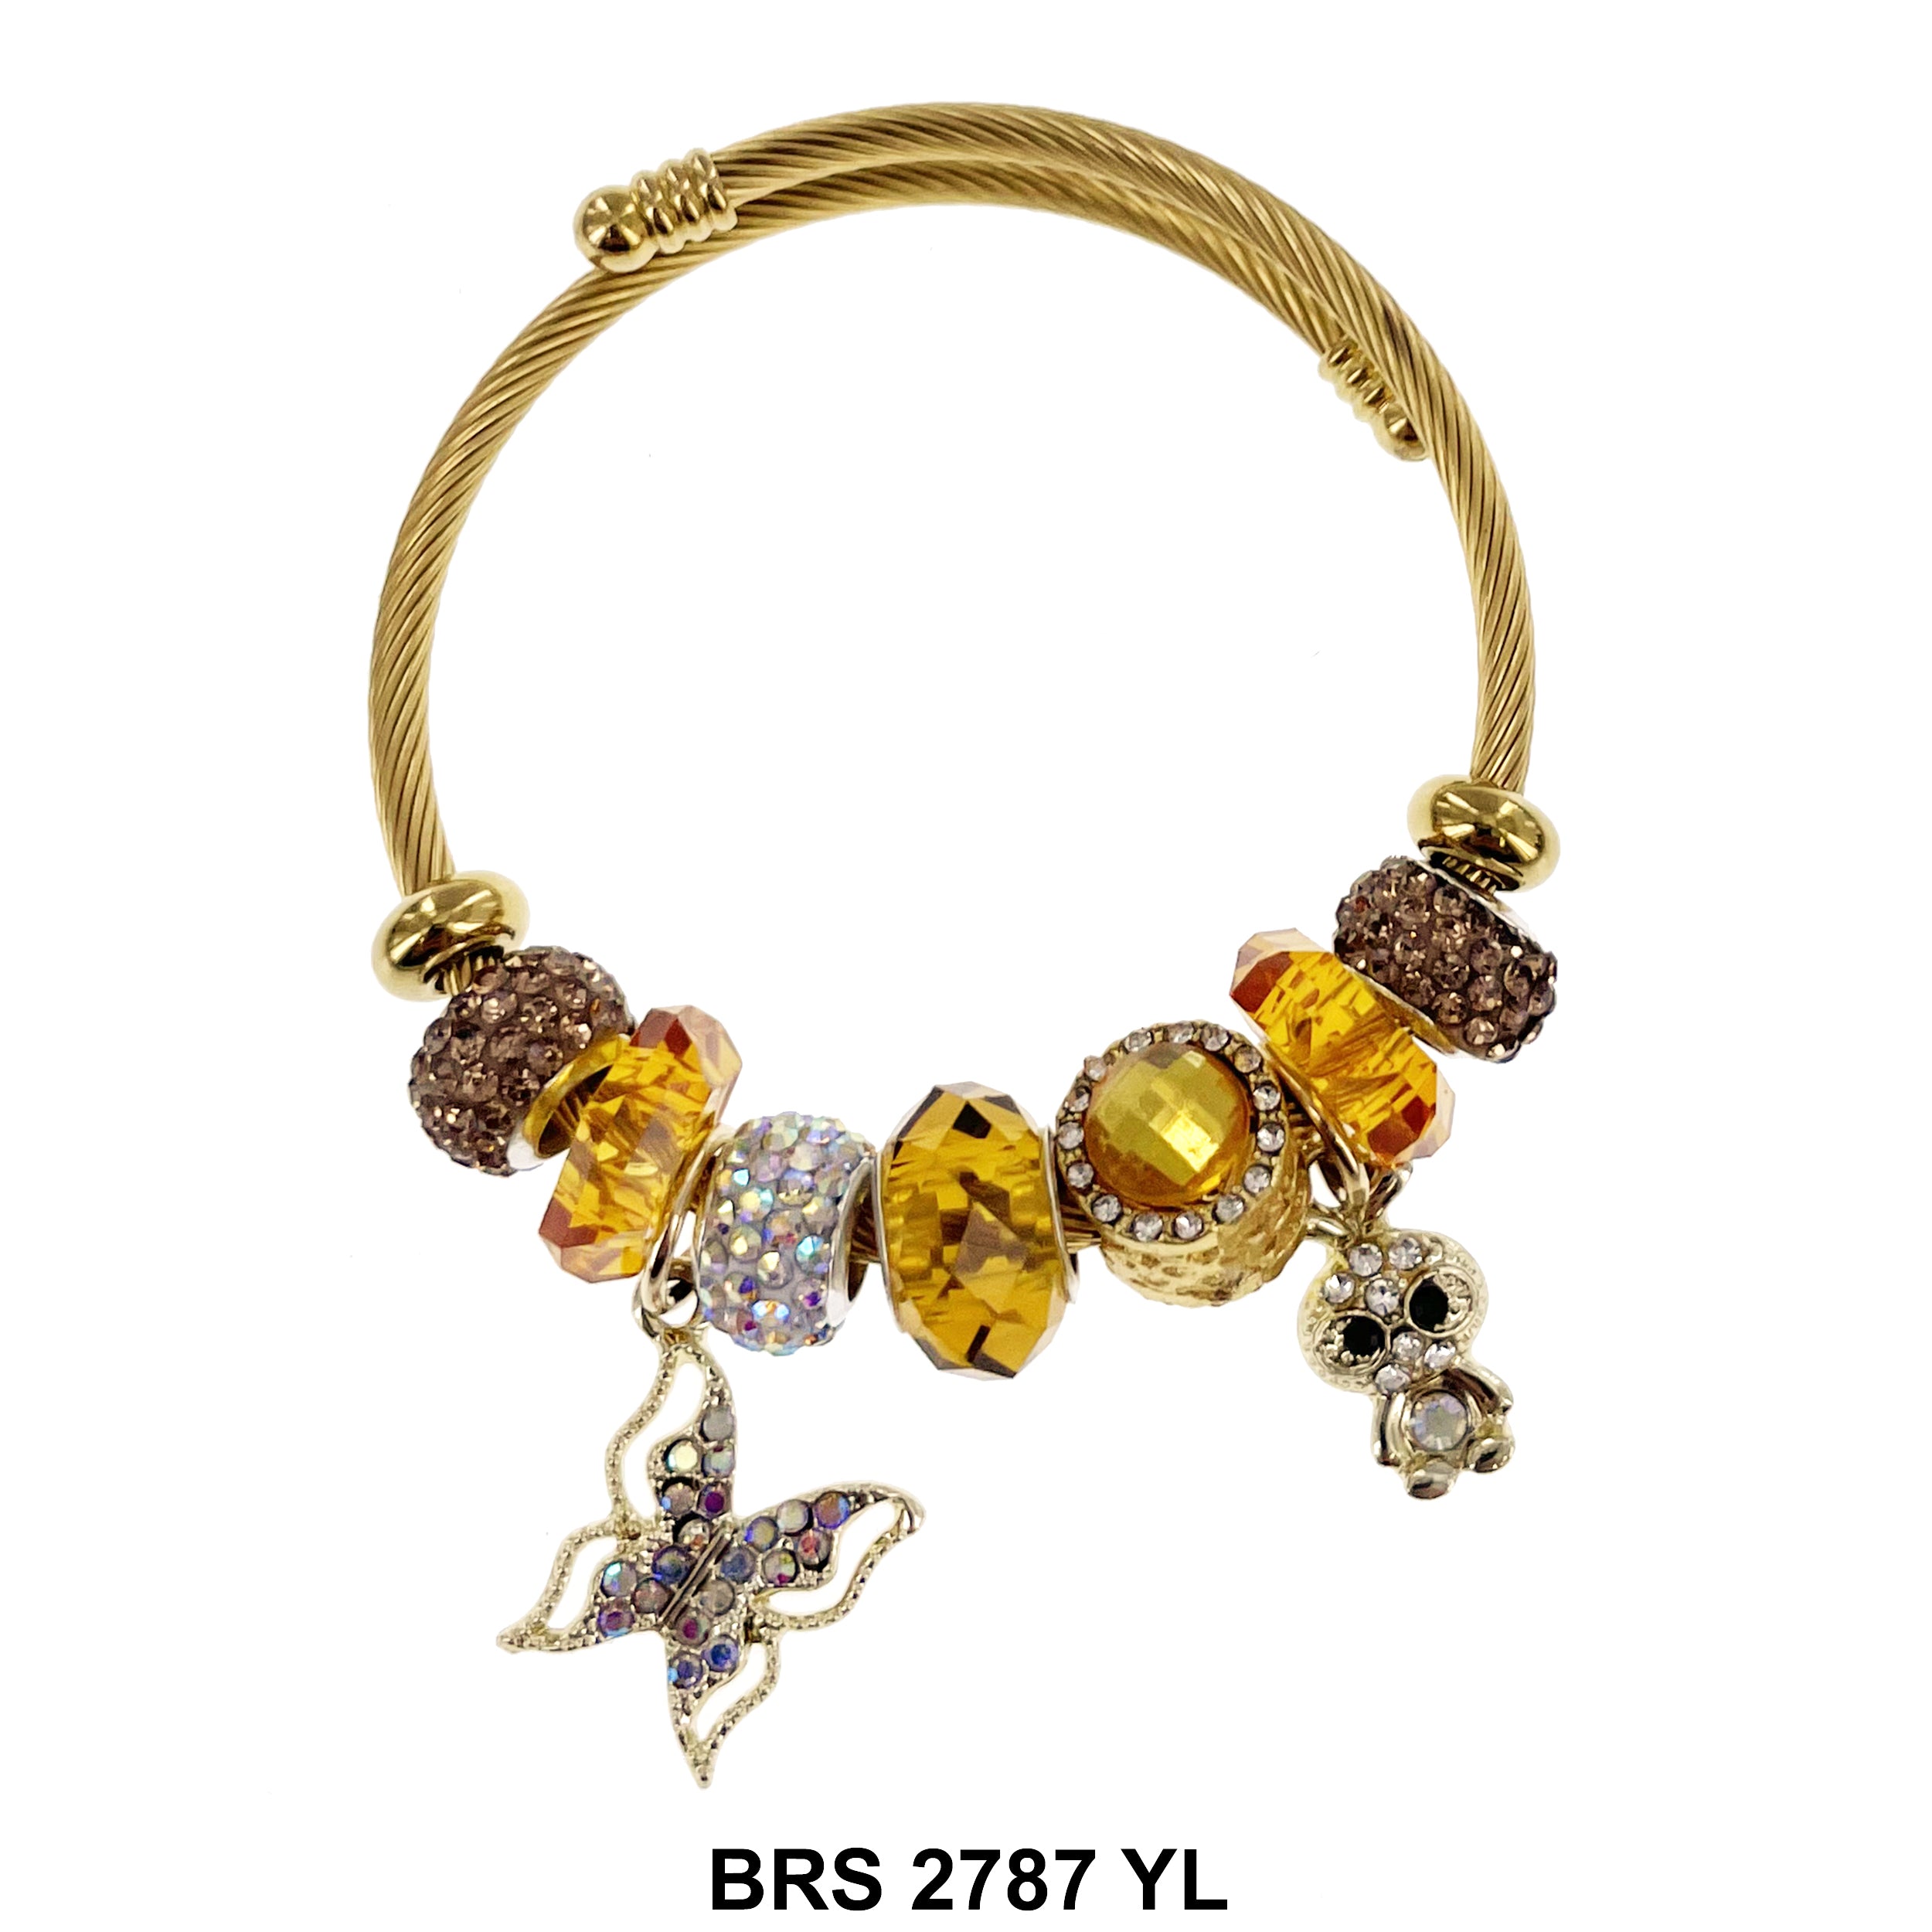 Hanging Charm Bracelet BRS 2787 YL